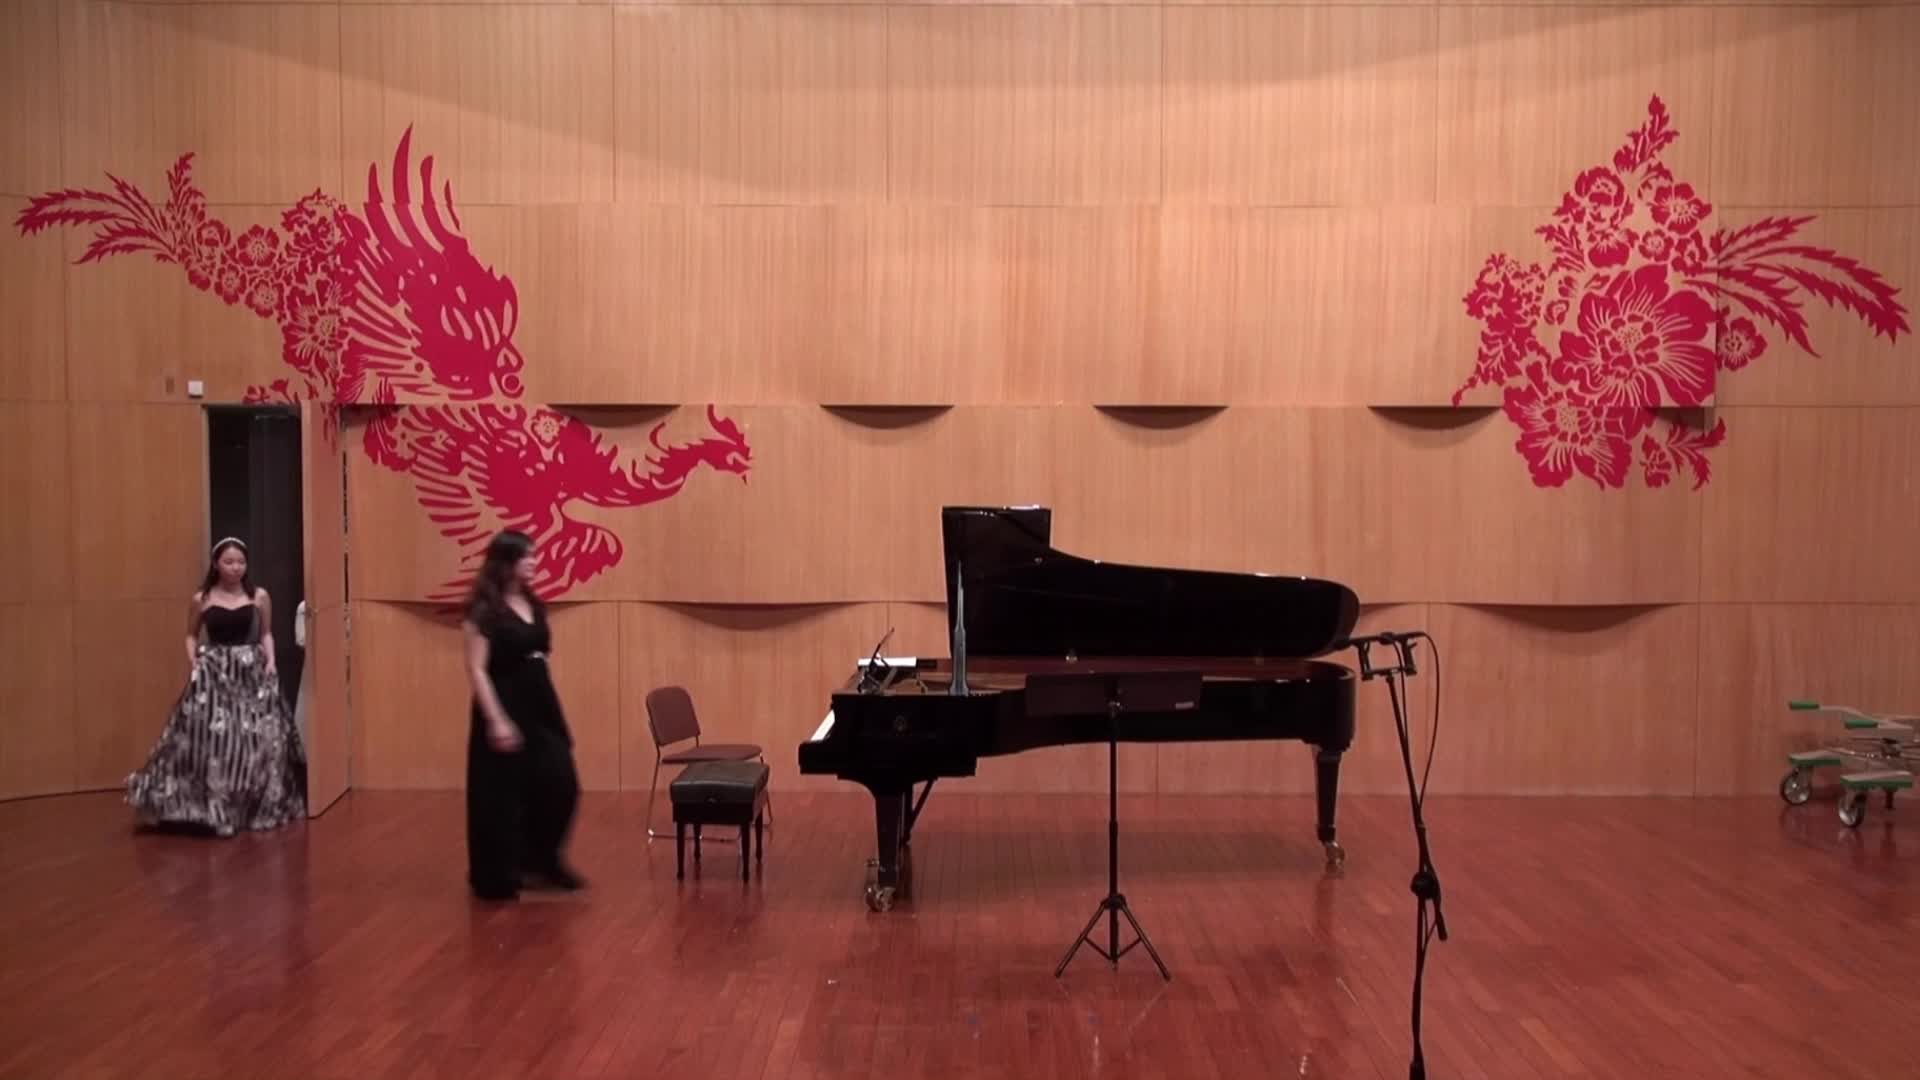 徐頌仁鋼琴三重奏《民謠》 之樂曲分析與研究探討的封面圖